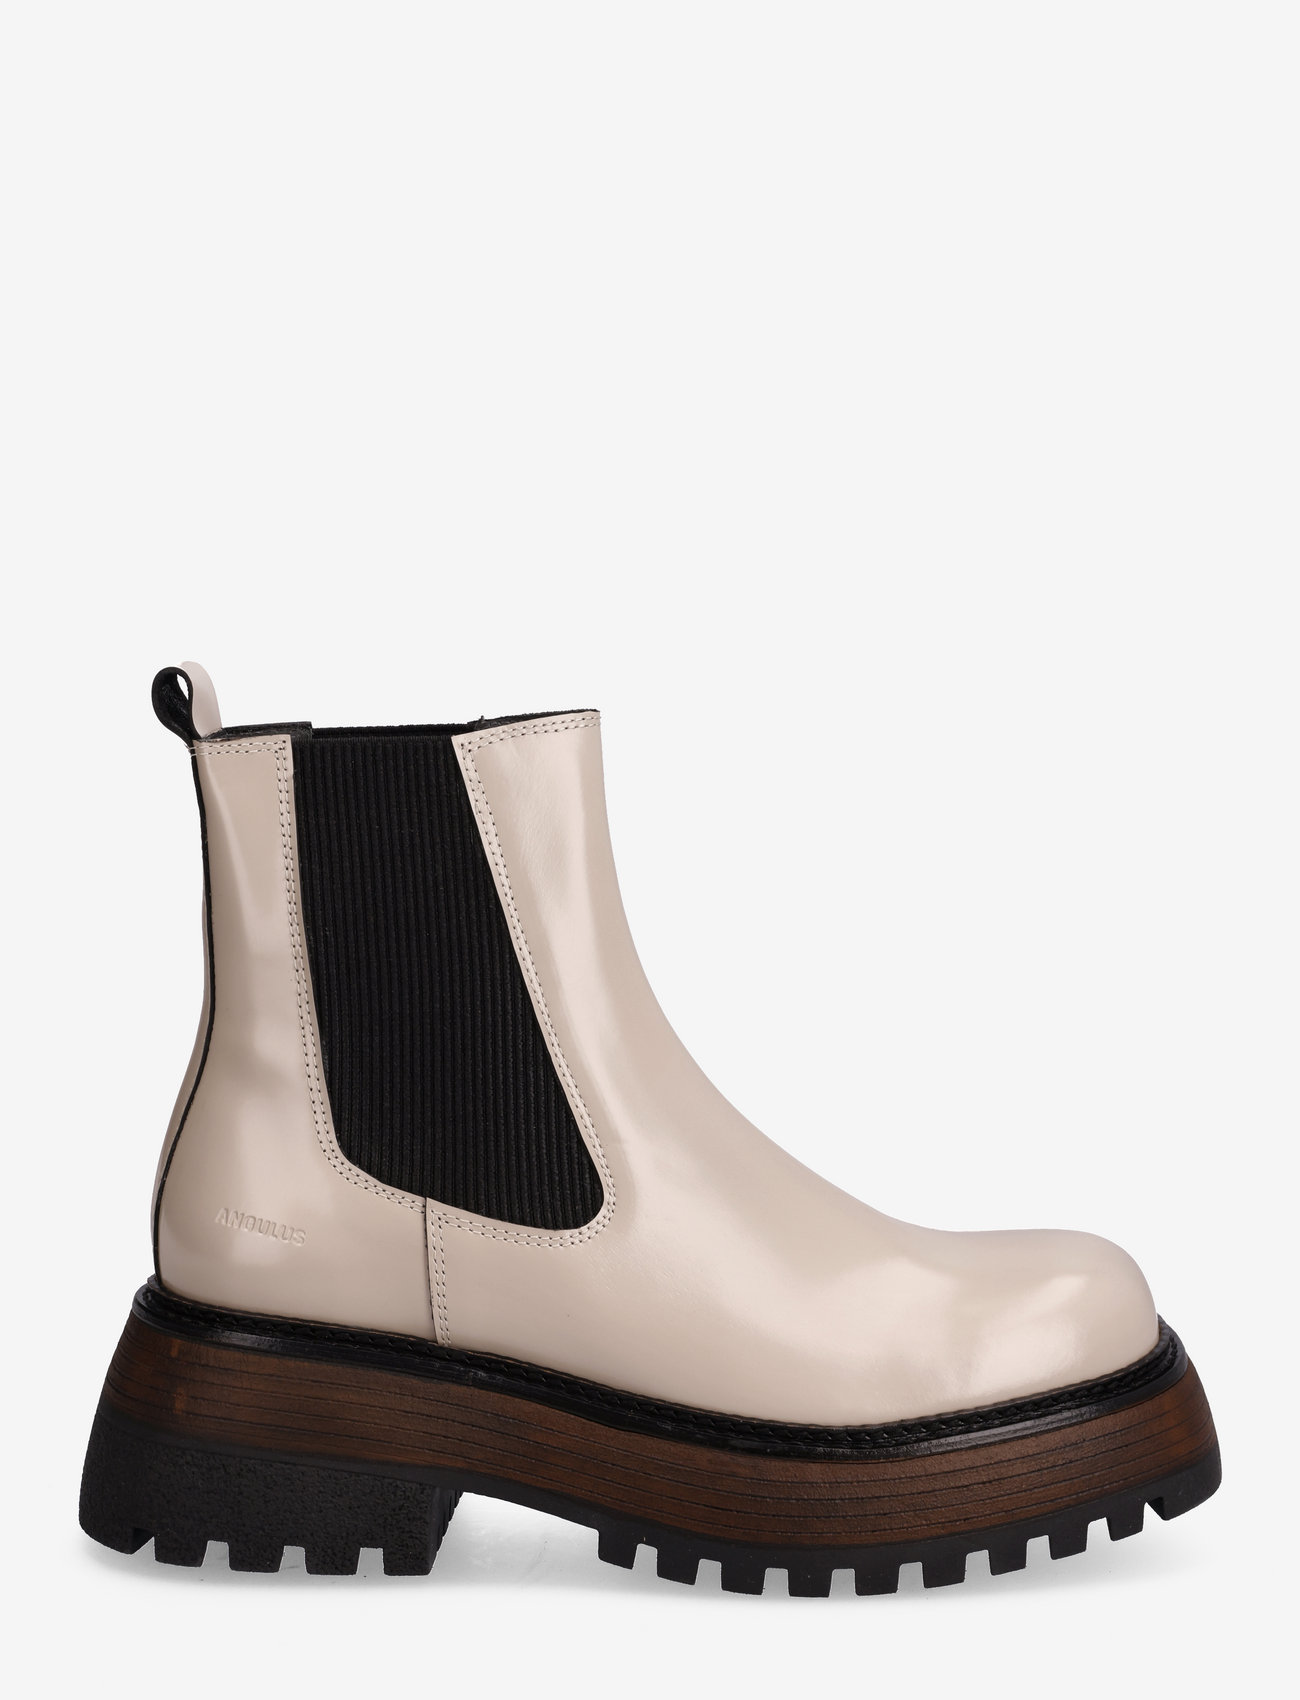 ANGULUS - Boots - flat - chelsea-saapad - 1402/019 beige/black - 1